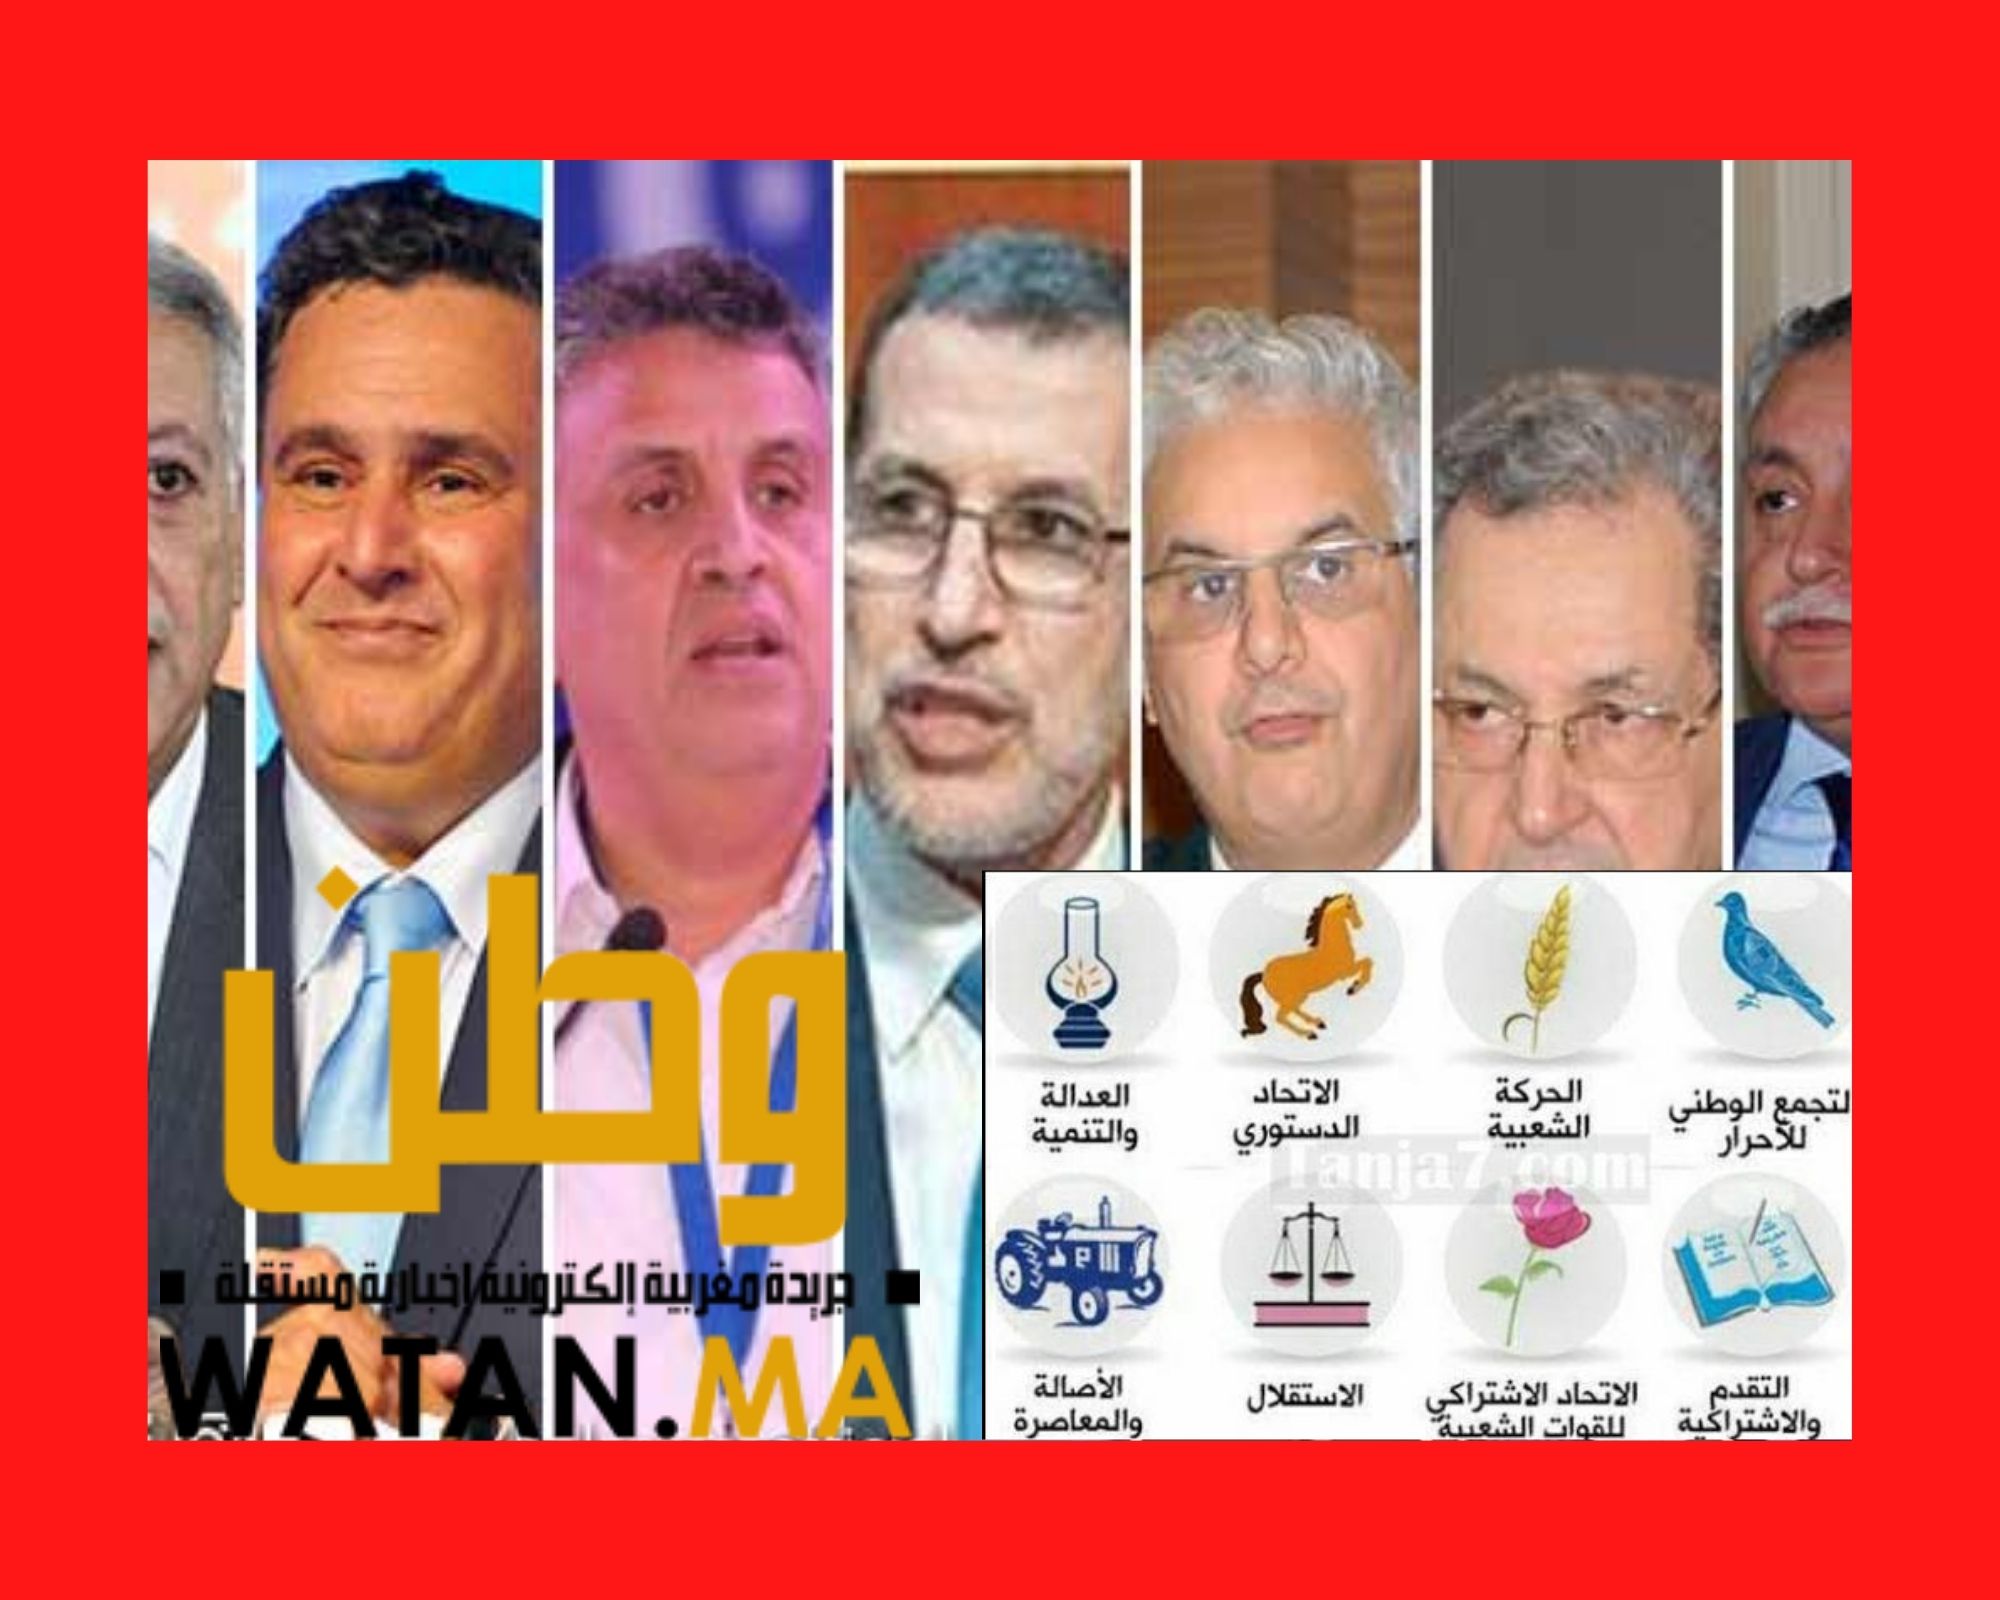 الاحزاب السياسية المغربية لم ترجع 1.3 مليار من الدعم العمومي